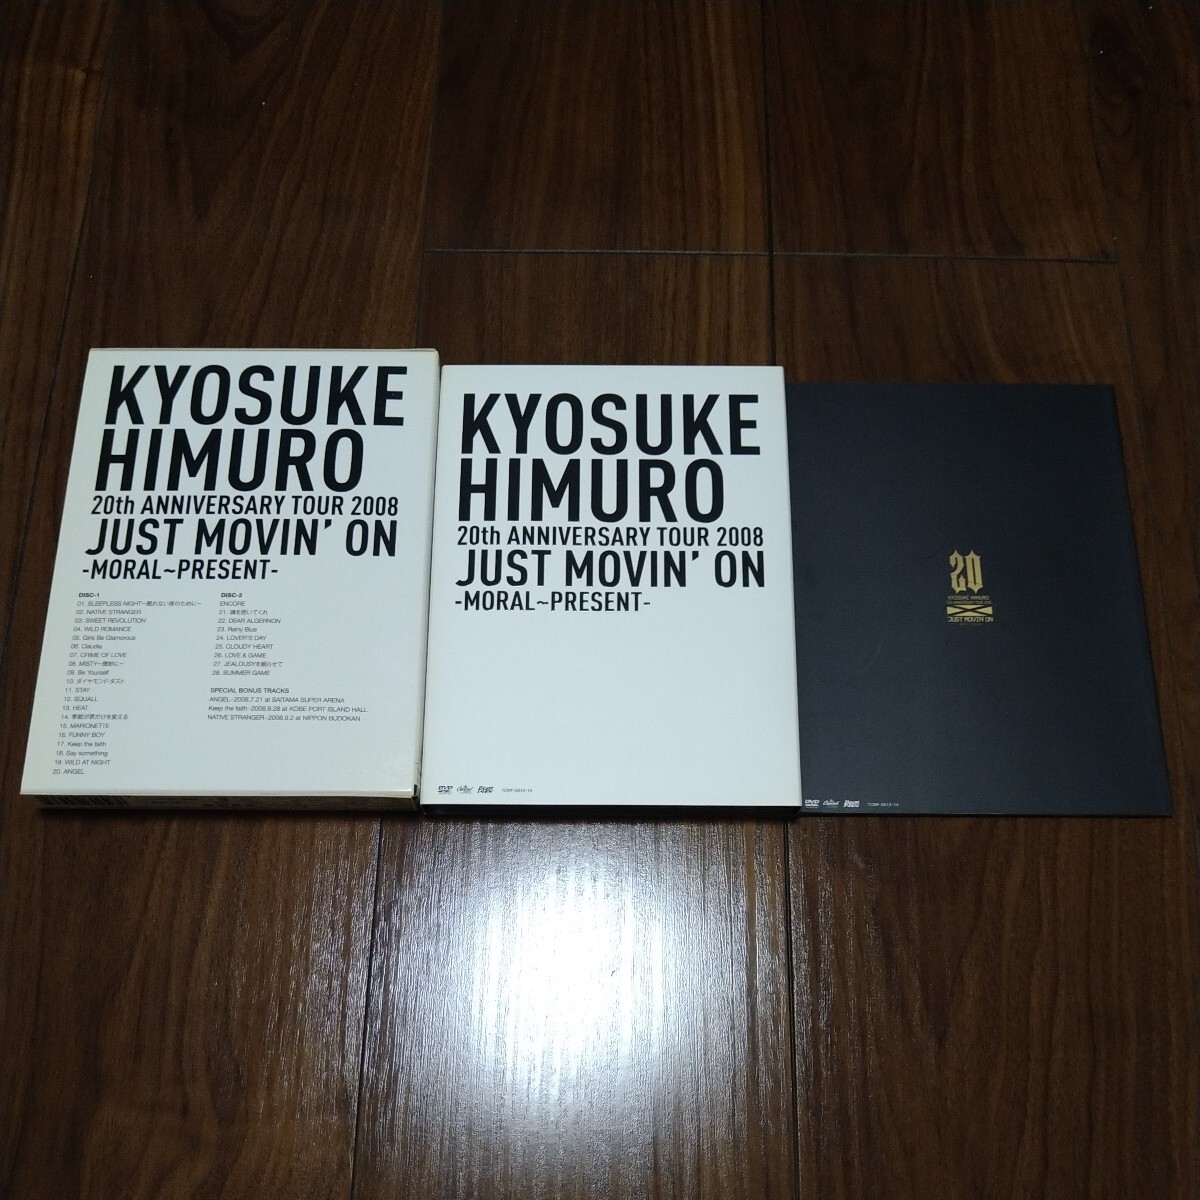 【送料無料】氷室京介 DVD KYOSUKE HIMURO 20th ANNIVERSARY TOUR 2008 JUST MOVIN' ON MORAL PRESENT 2枚組 STAFF PASS 付属 BOOWY/ボウイ